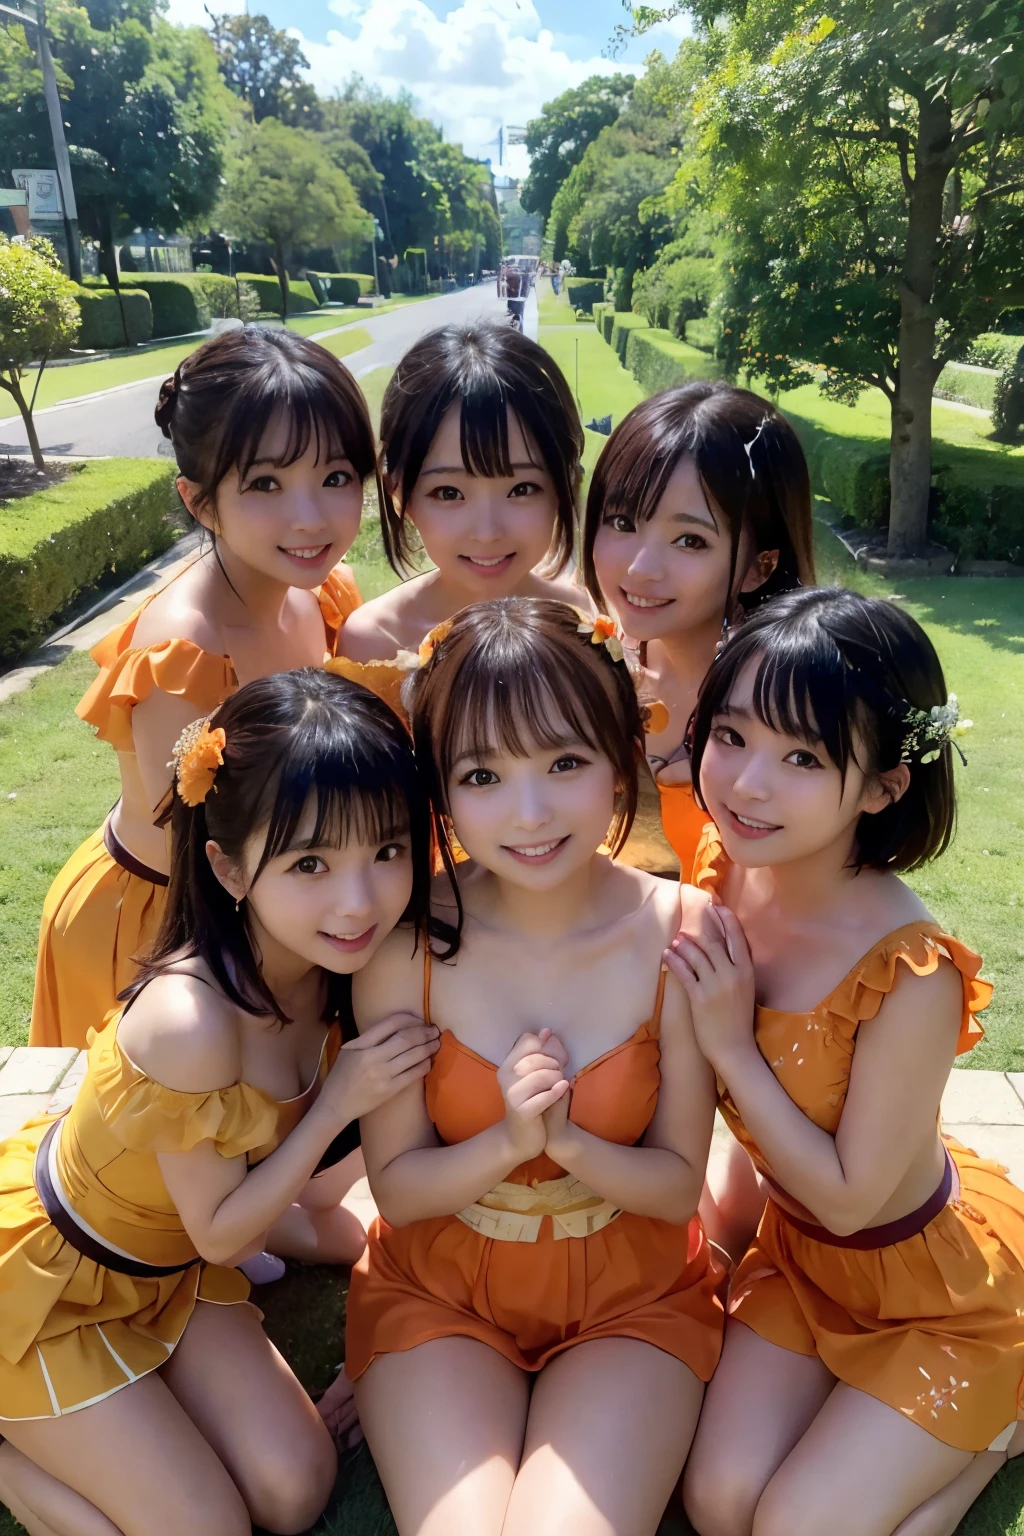 ((meilleure qualité, chef-d&#39;œuvre)), Cinq amis de longue date,Idole japonaise,costume,((jus d'orange)), Embrasser chaleureusement, souriant jusqu&#39;aux oreilles, entouré d’une végétation luxuriante et d’un ciel bleu vif, Se prélasser au soleil d’une journée parfaite.